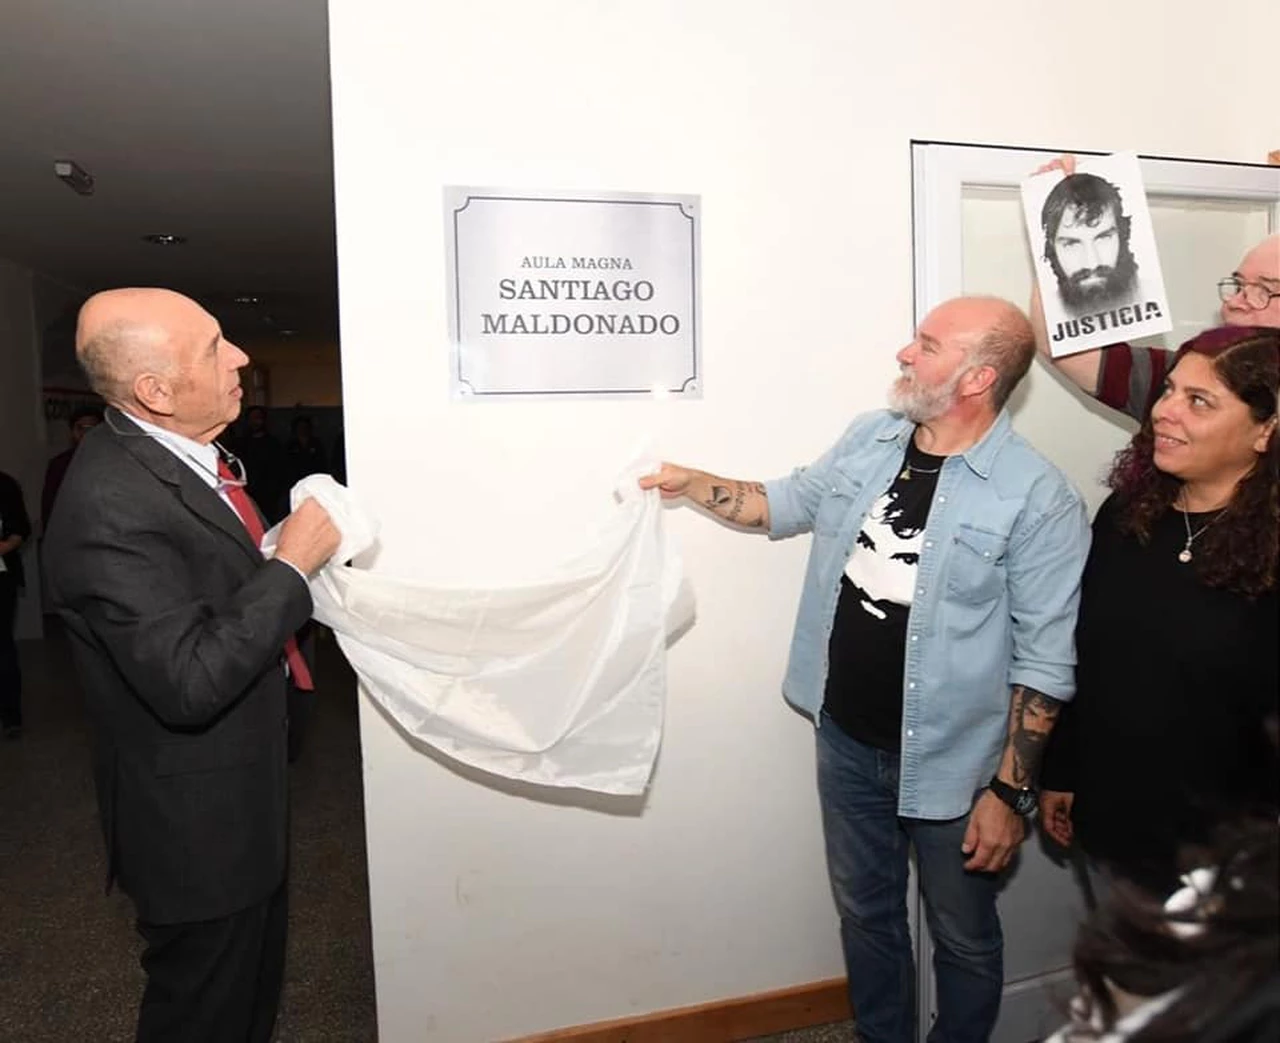 El Aula Magna de la Universidad Nacional de Tierra del Fuego llevará el nombre "Santiago Maldonado"